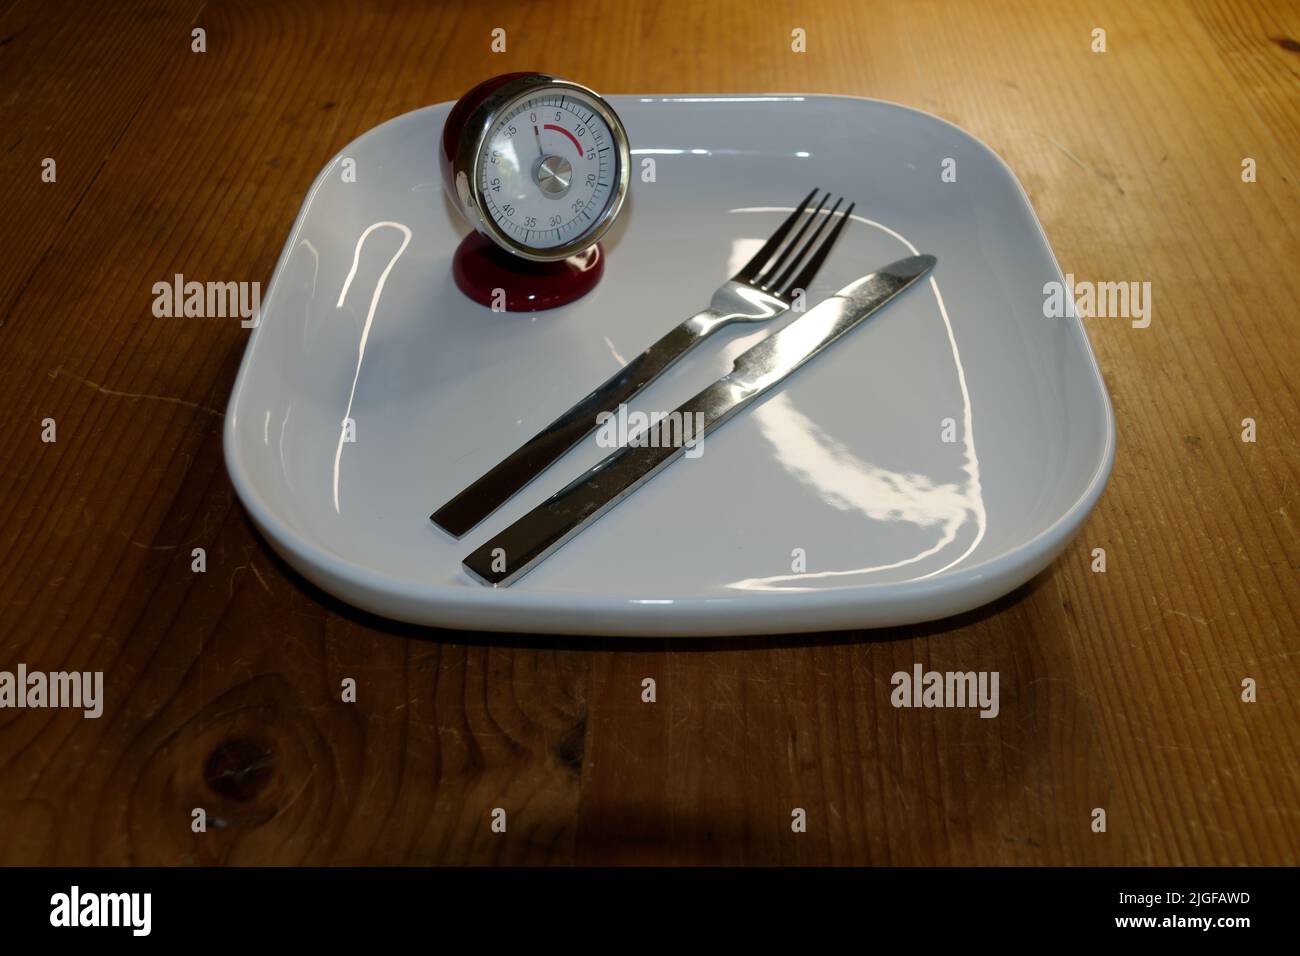 Symbolisches Bild für Ernährung und Gewichtskontrolle, Intervallfasten: Leerer Teller mit Stoppuhr und Messer und Gabel. Stockfoto